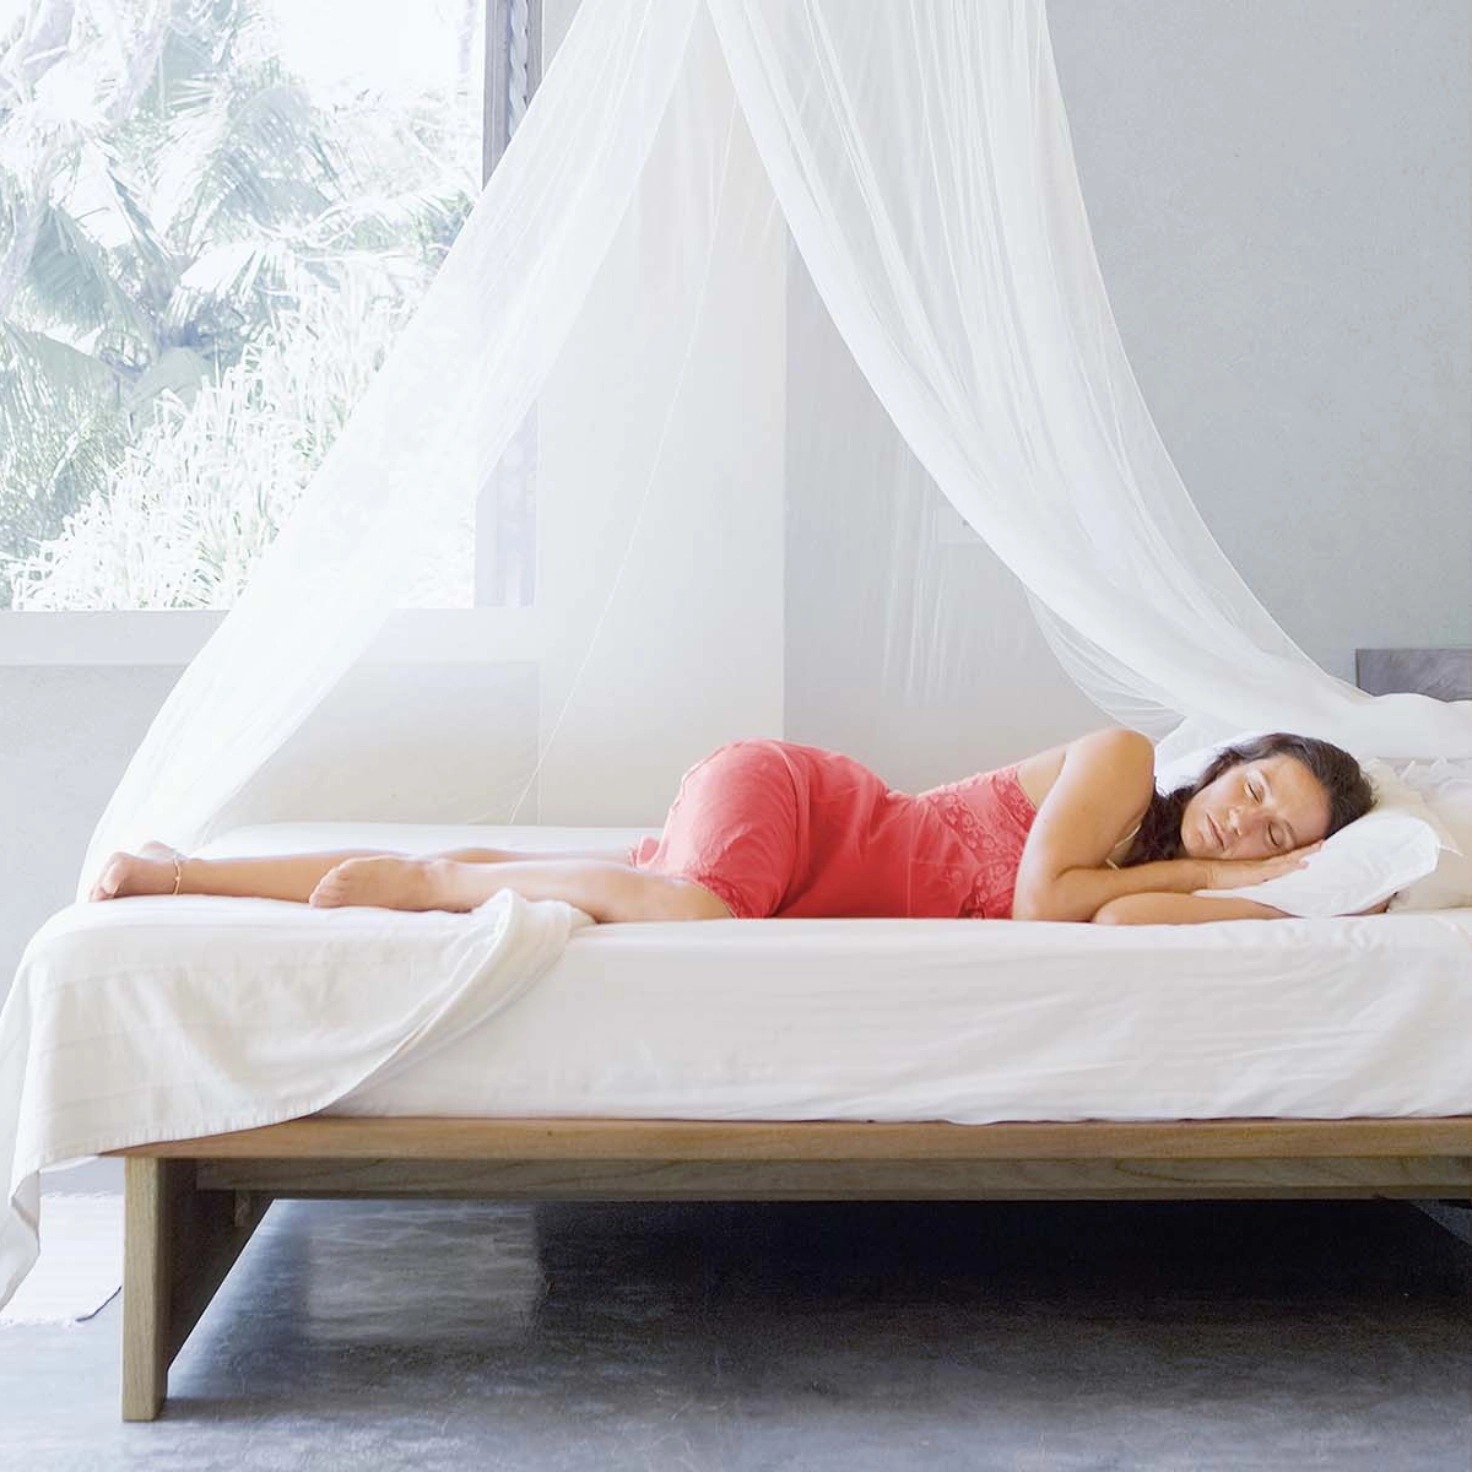 Una donna dorme sotto una zanzariera in estate.